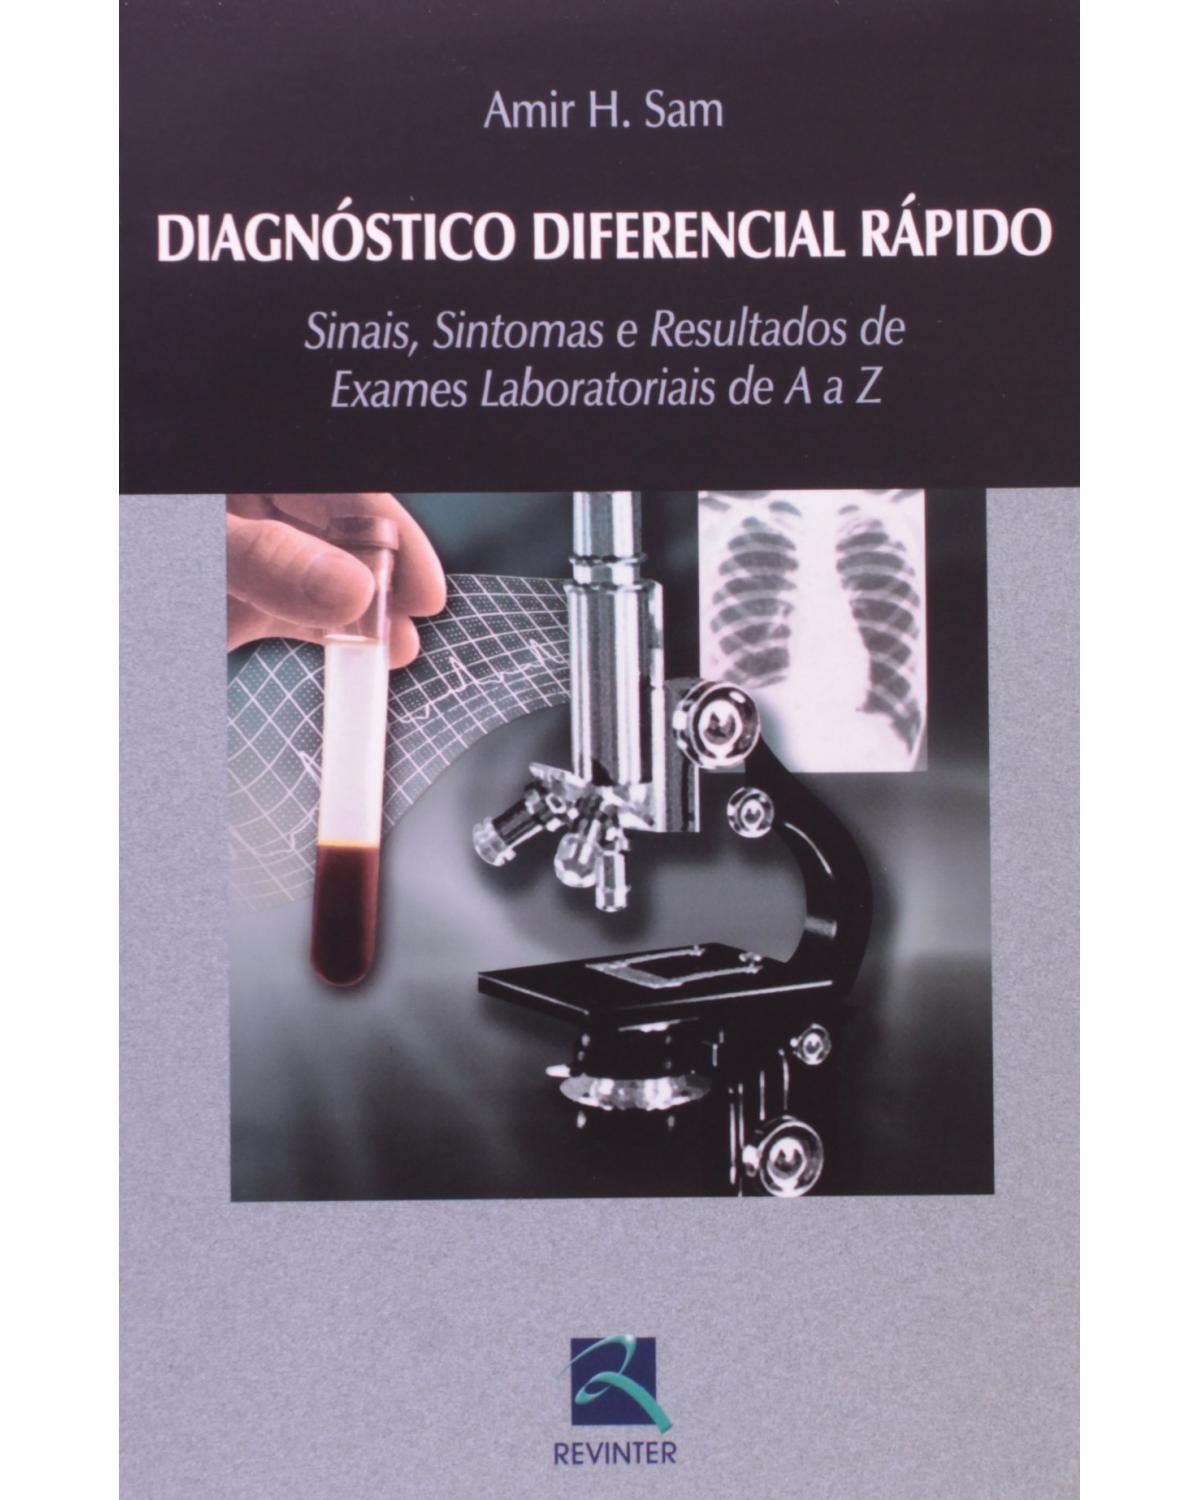 Diagnóstico diferencial rápido - sinais, sintomas e resultados de exames laboratoriais de A a Z - 1ª Edição | 2006